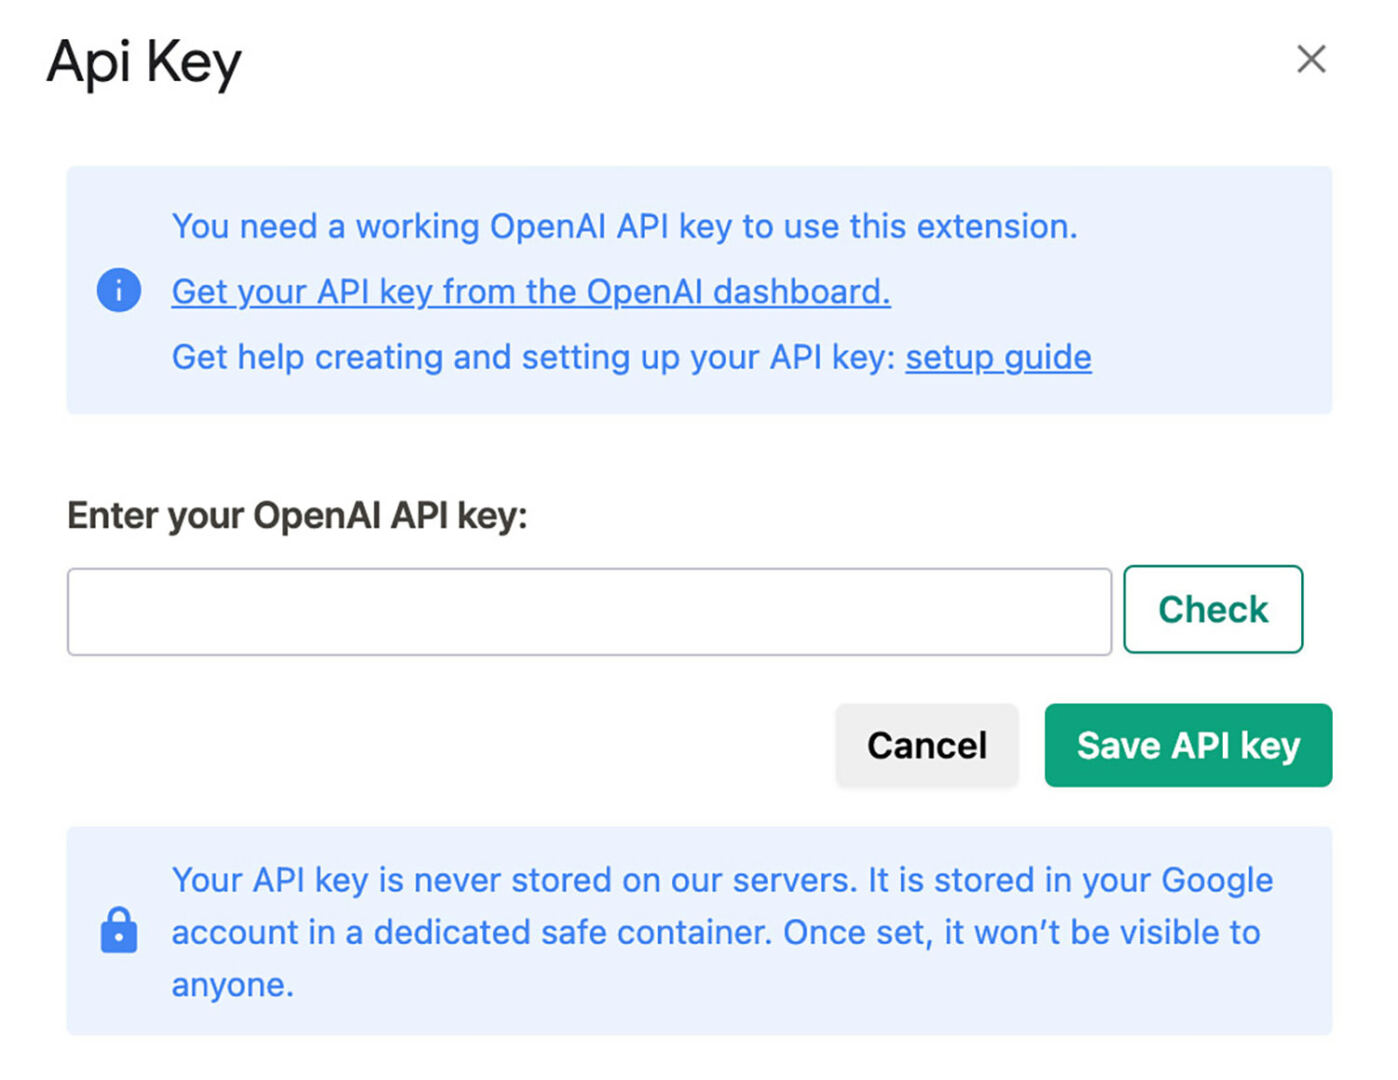 Save API key